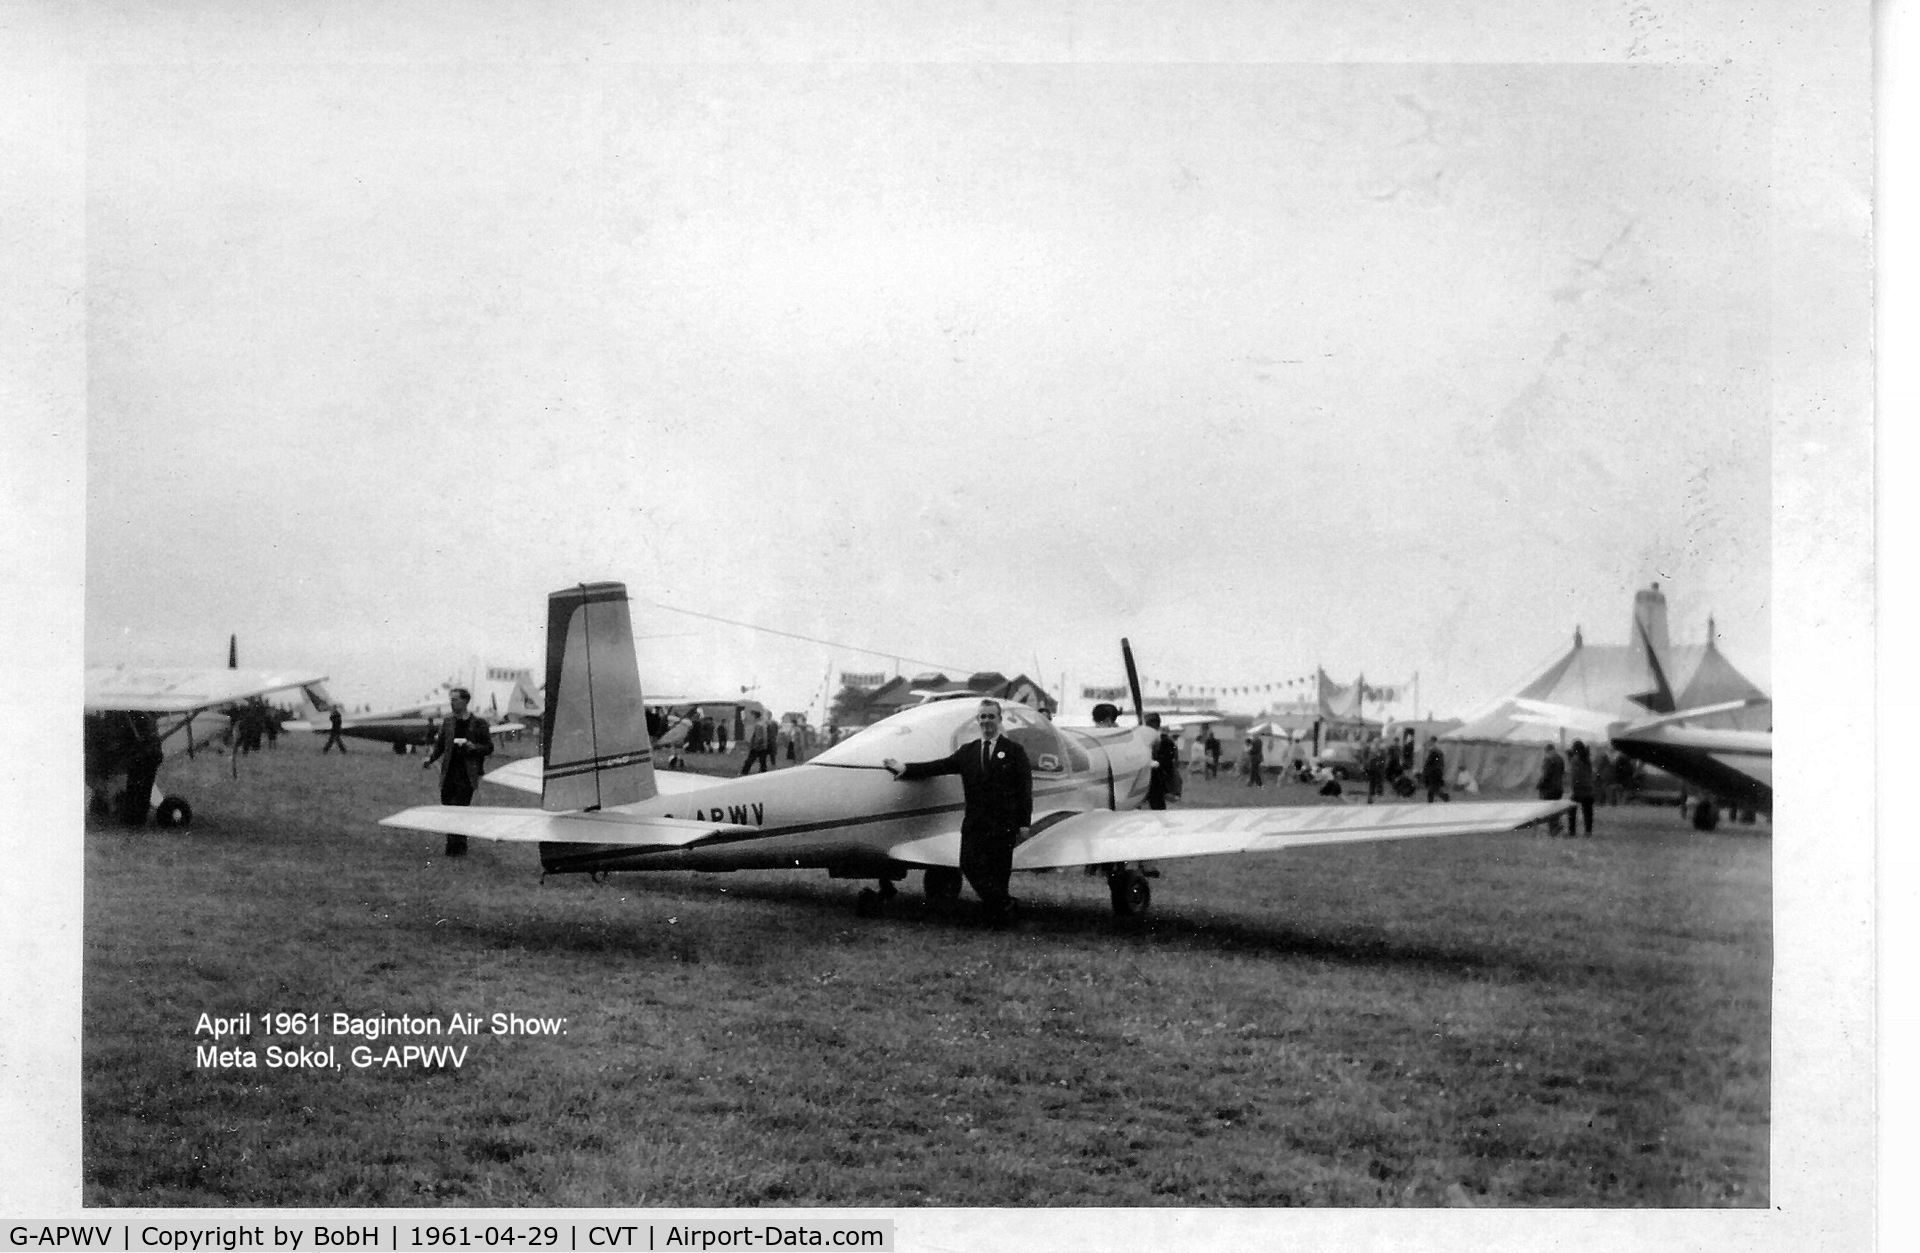 G-APWV, Orlican L-40 Meta Sokol C/N 150707, G-APWV at Baginton in April 1960.